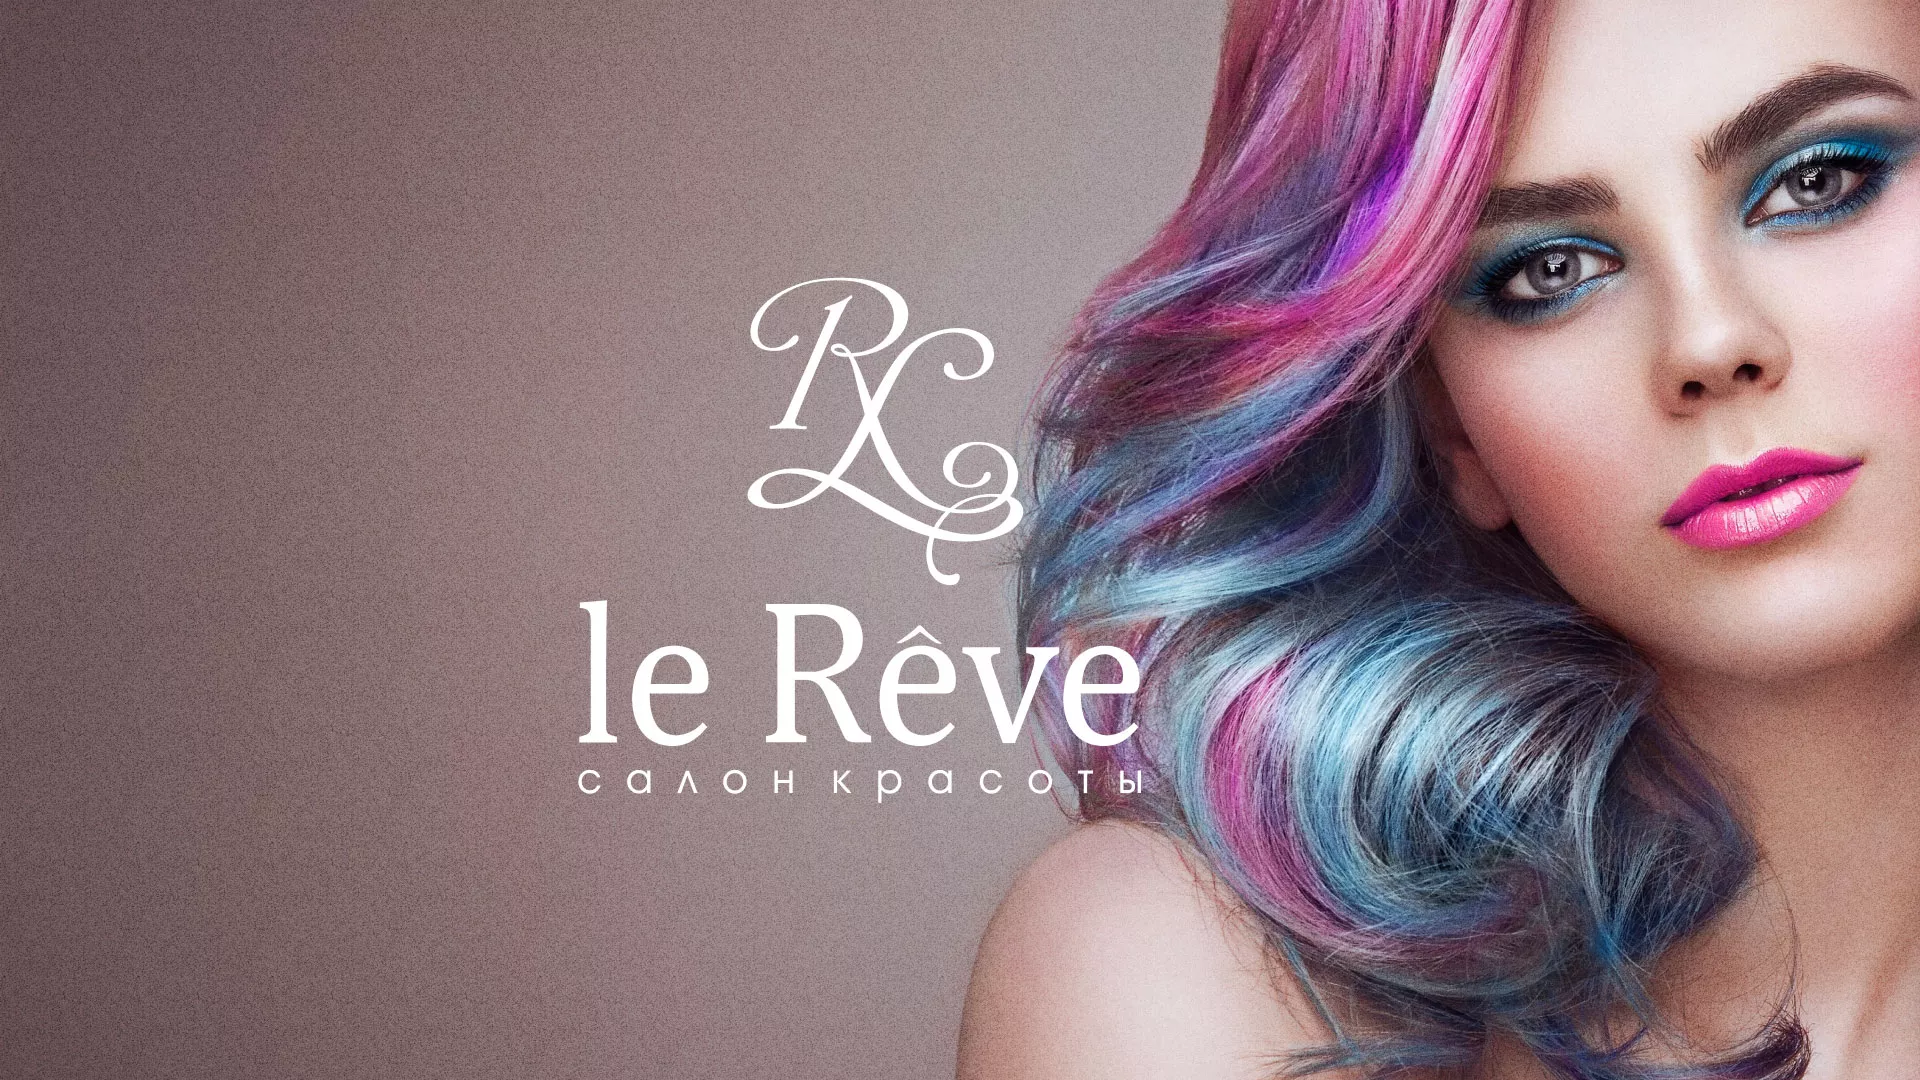 Создание сайта для салона красоты «Le Reve» в Костерёво